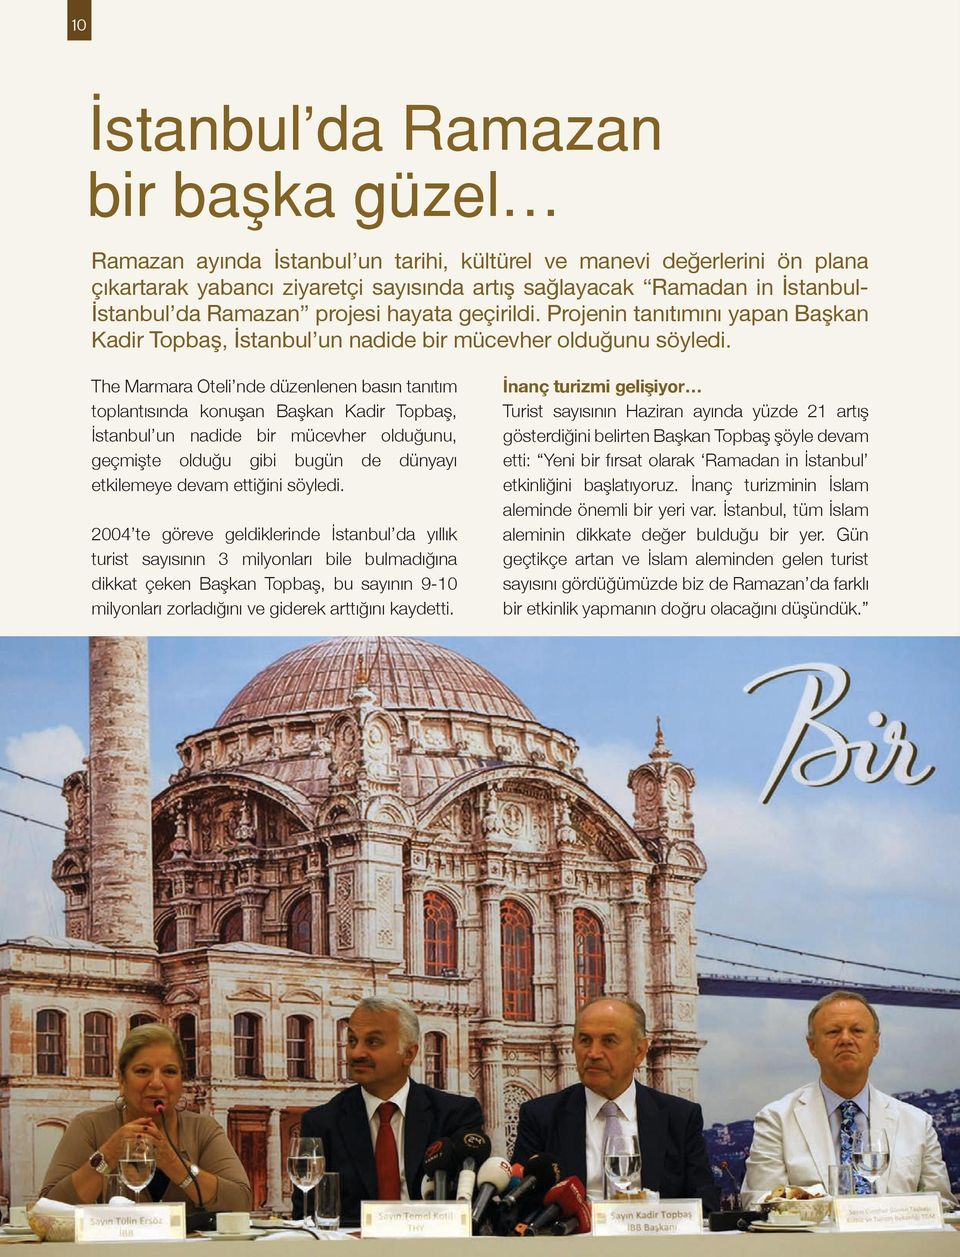 The Marmara Oteli nde düzenlenen basın tanıtım toplantısında konuşan Başkan Kadir Topbaş, İstanbul un nadide bir mücevher olduğunu, geçmişte olduğu gibi bugün de dünyayı etkilemeye devam ettiğini